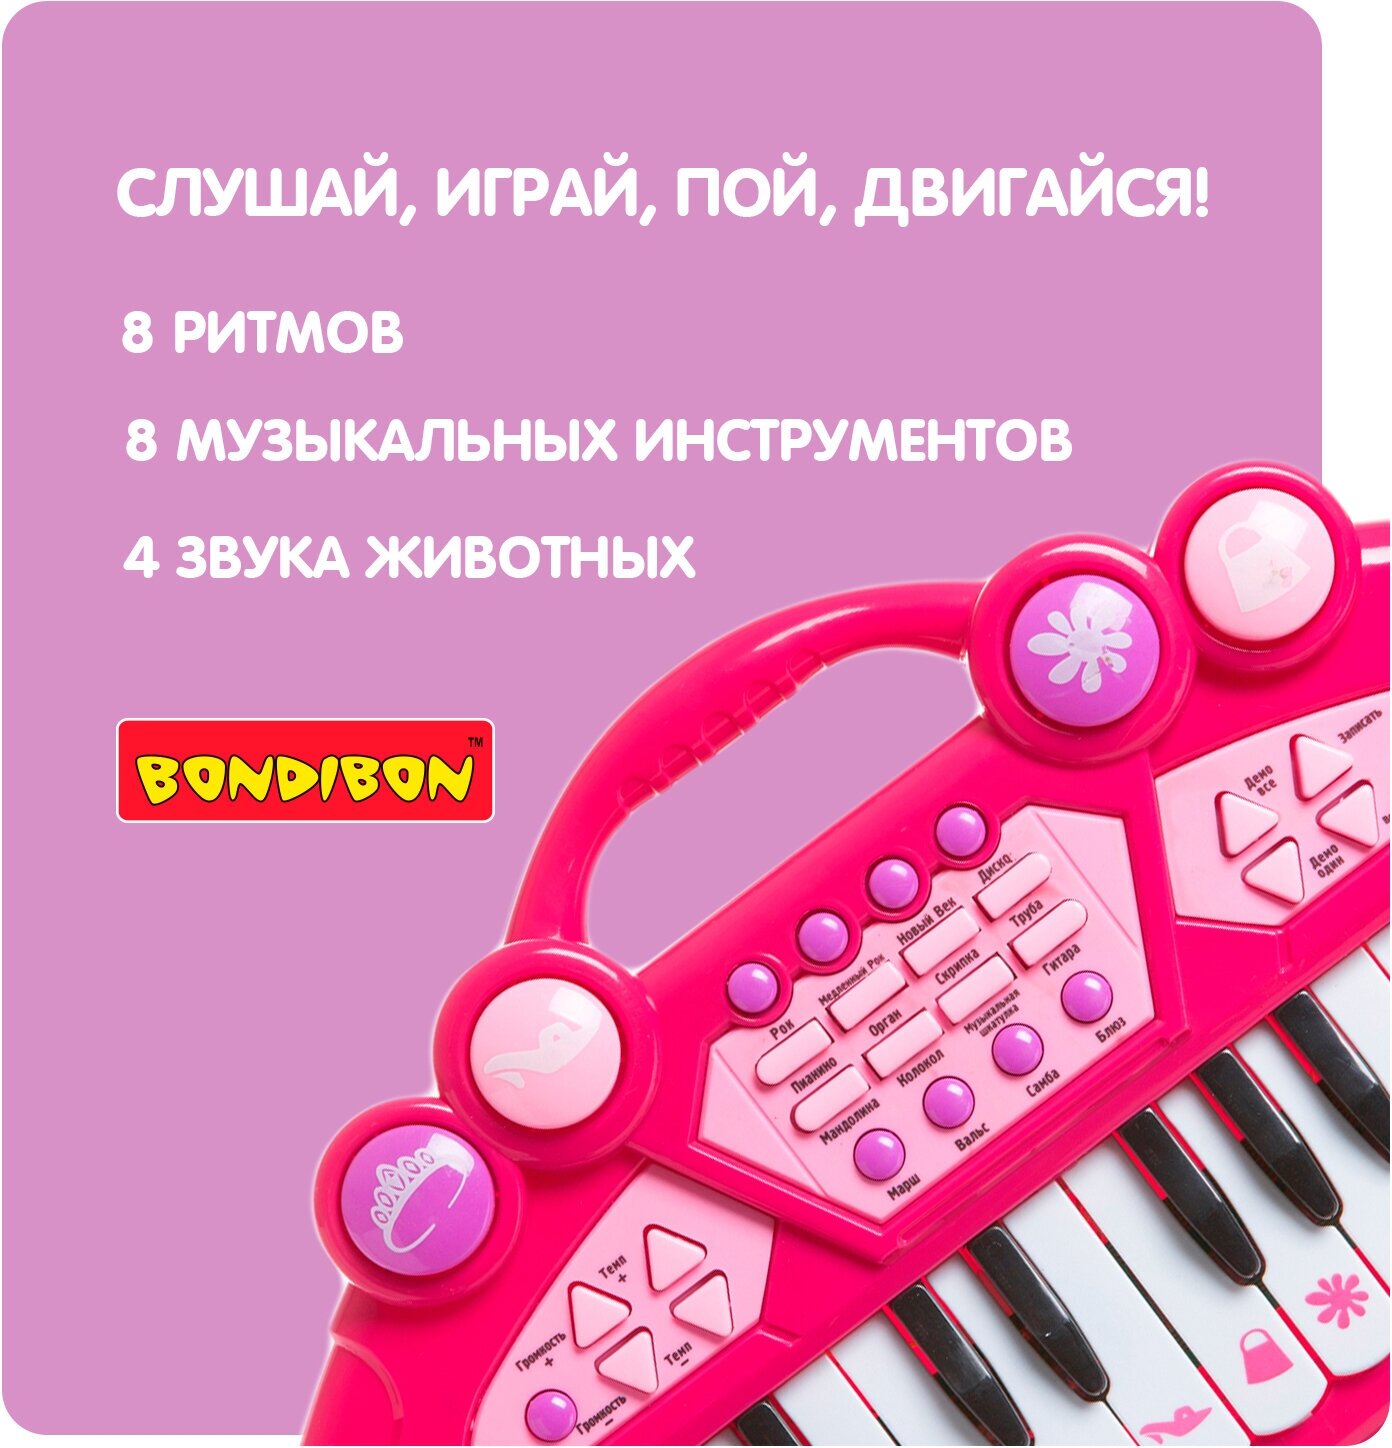 Синтезатор 24 клавиши, световые эффекты, ритмы, мелодии, запись Bondibon - фото №3